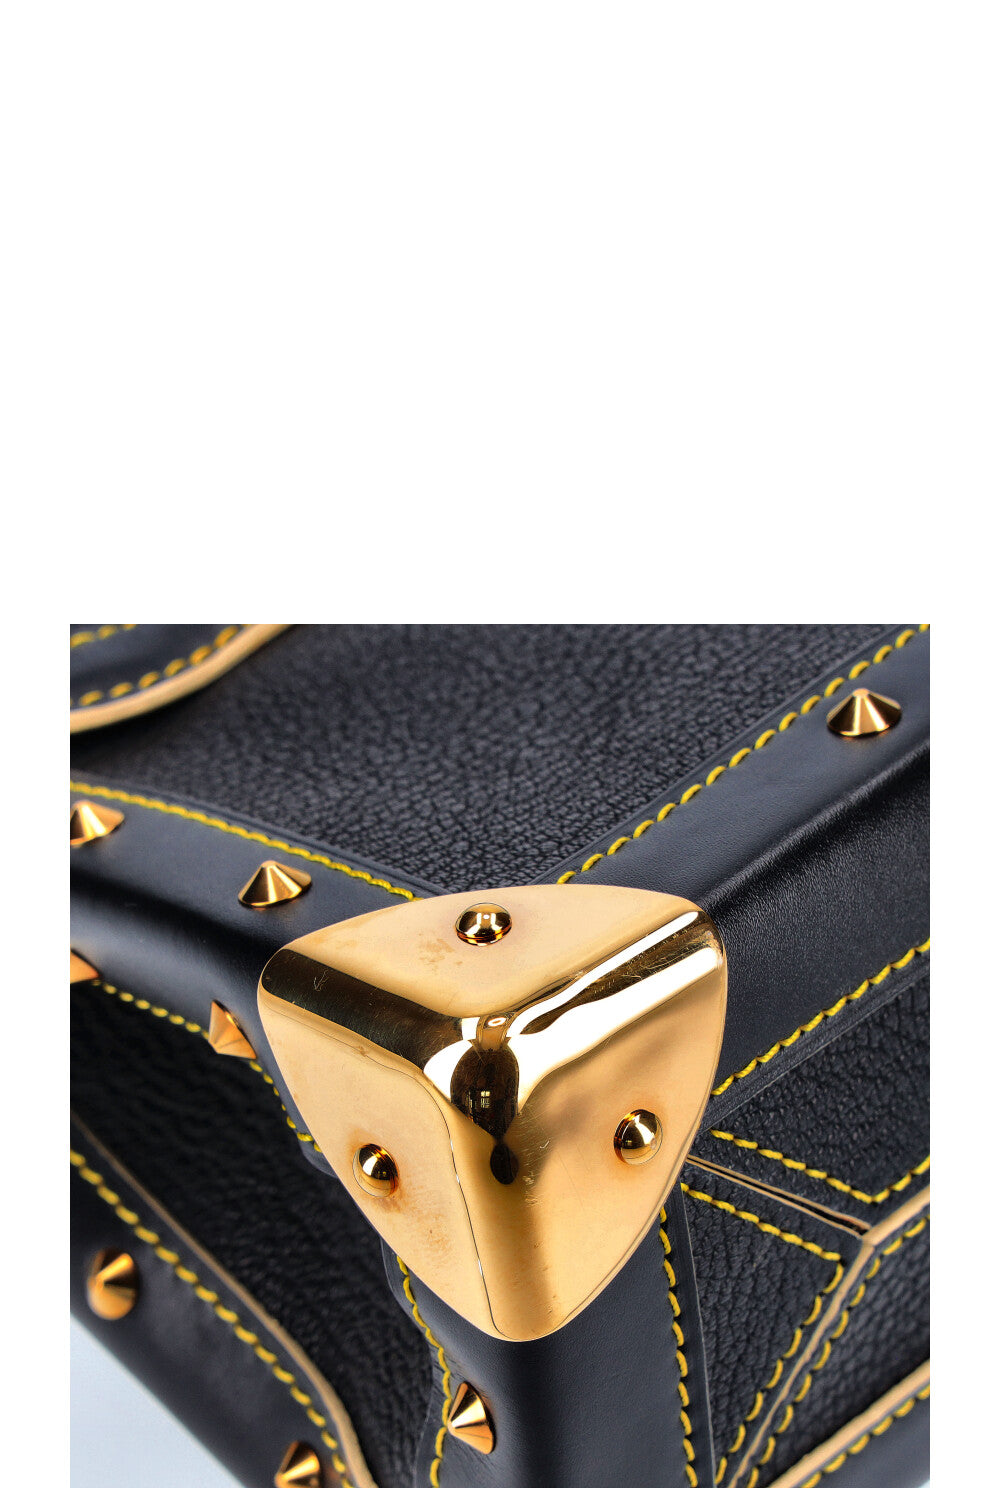 Louis Vuitton Uhrenrolle/Tasche für 3 Uhren